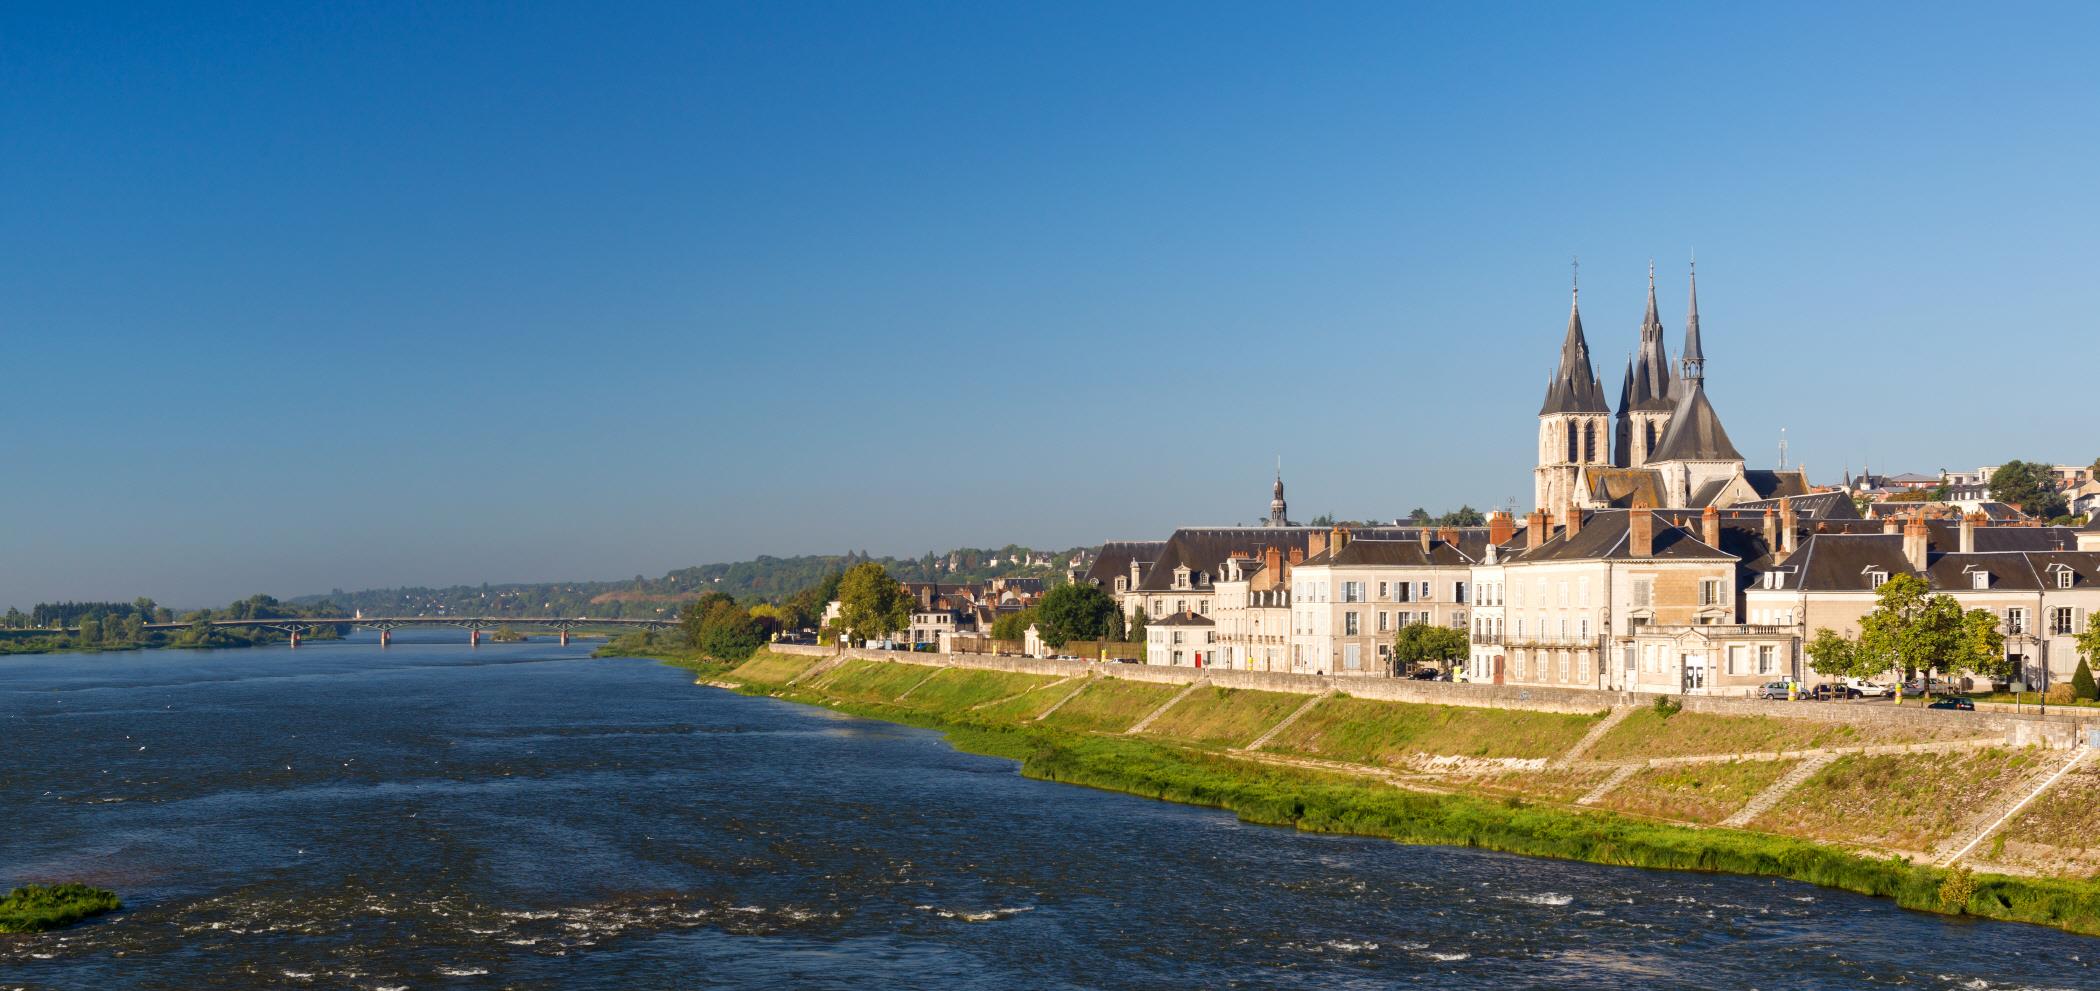 블루아 시내  Blois city